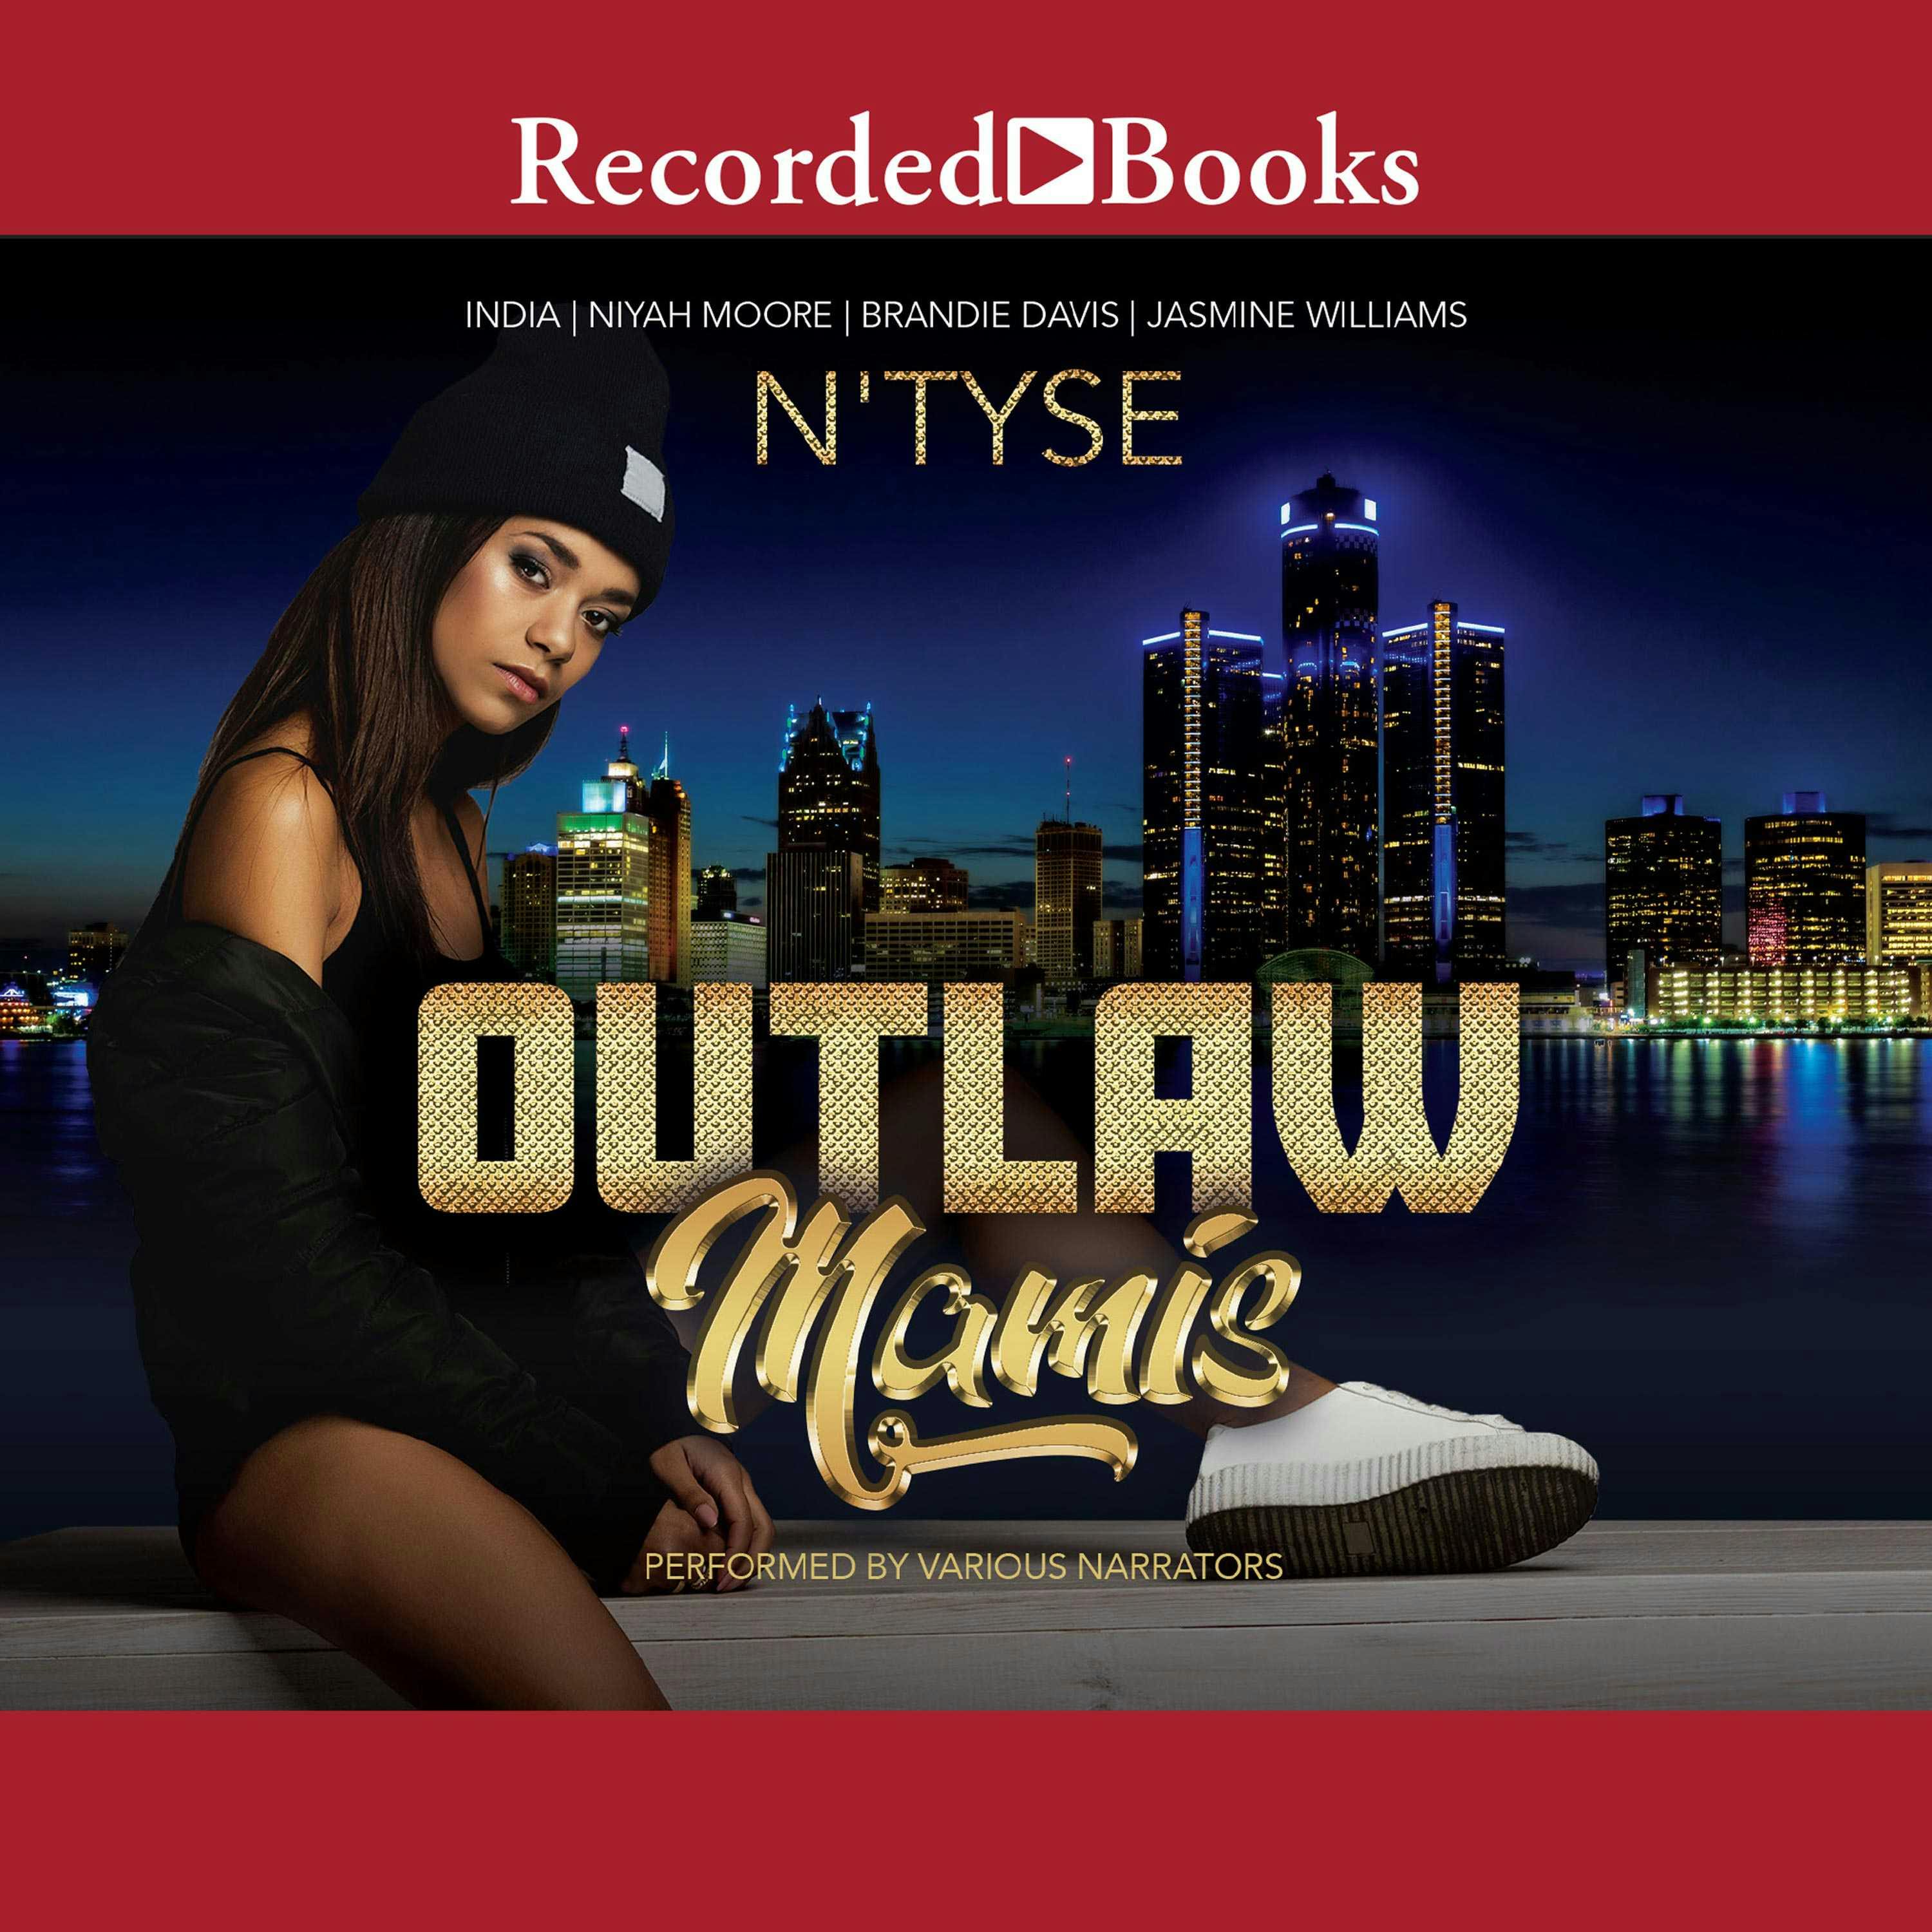 Outlaw Mamis - Jasmine Williams, N'Tyse, Niyah Moore, Brandie Davis, INDIA